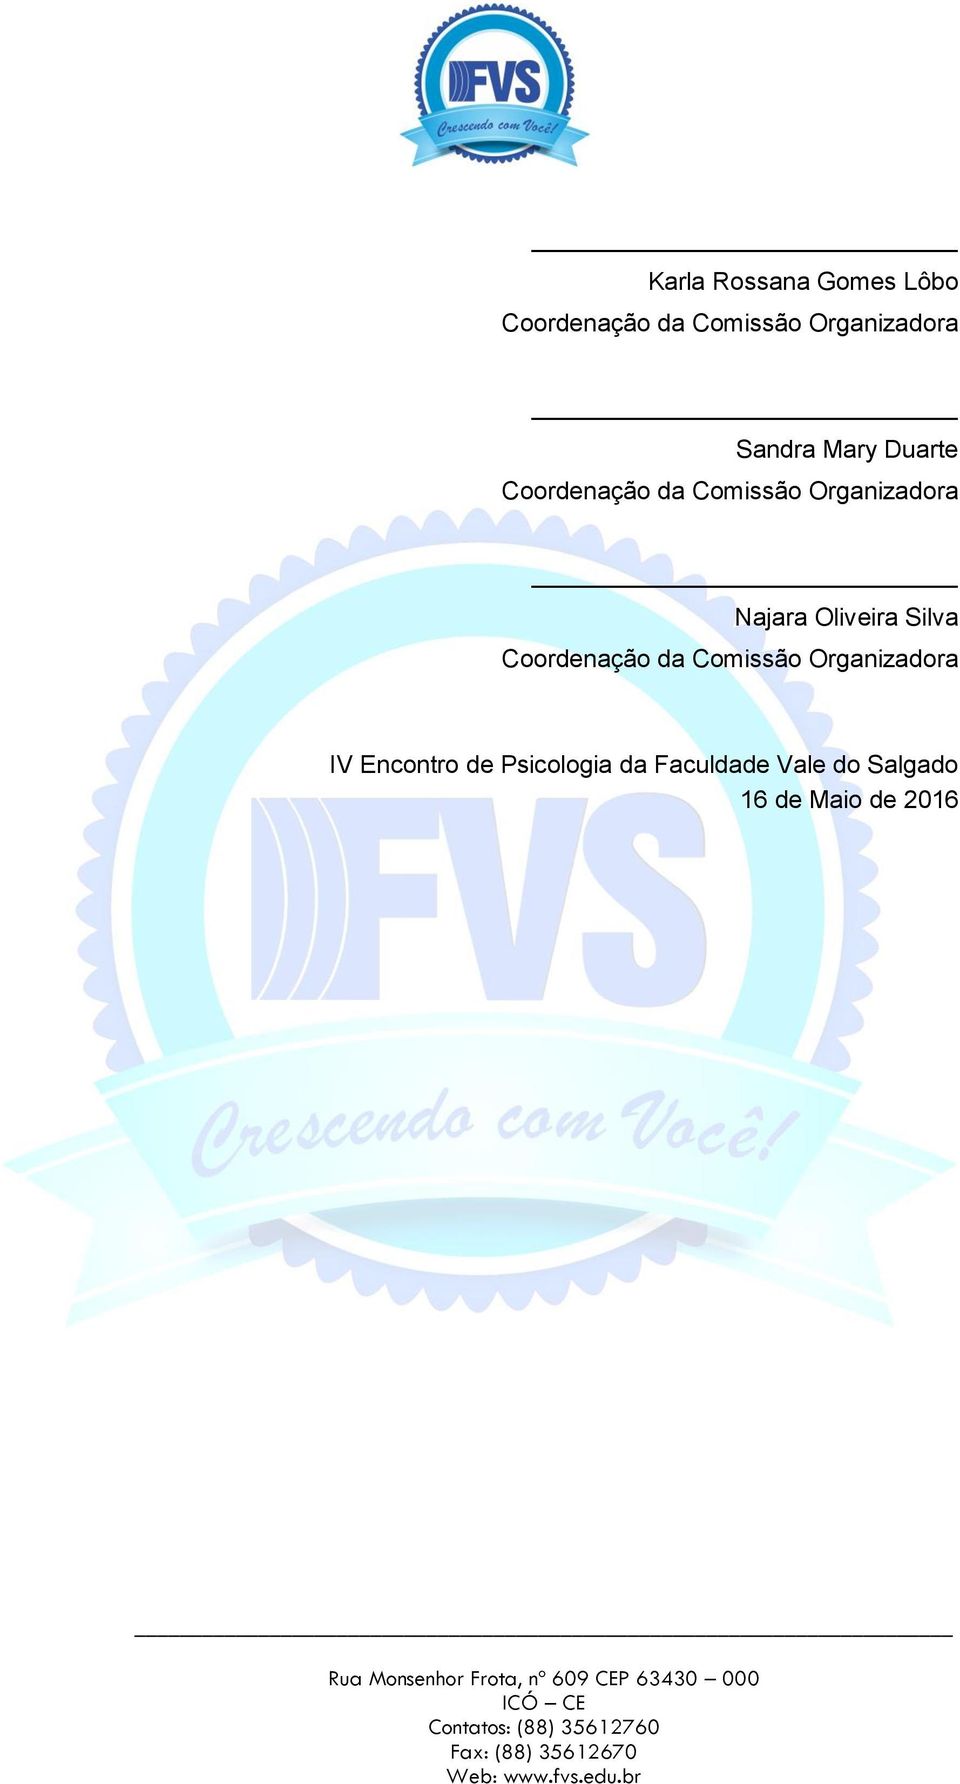 Oliveira Silva Coordenação da Comissão Organizadora IV